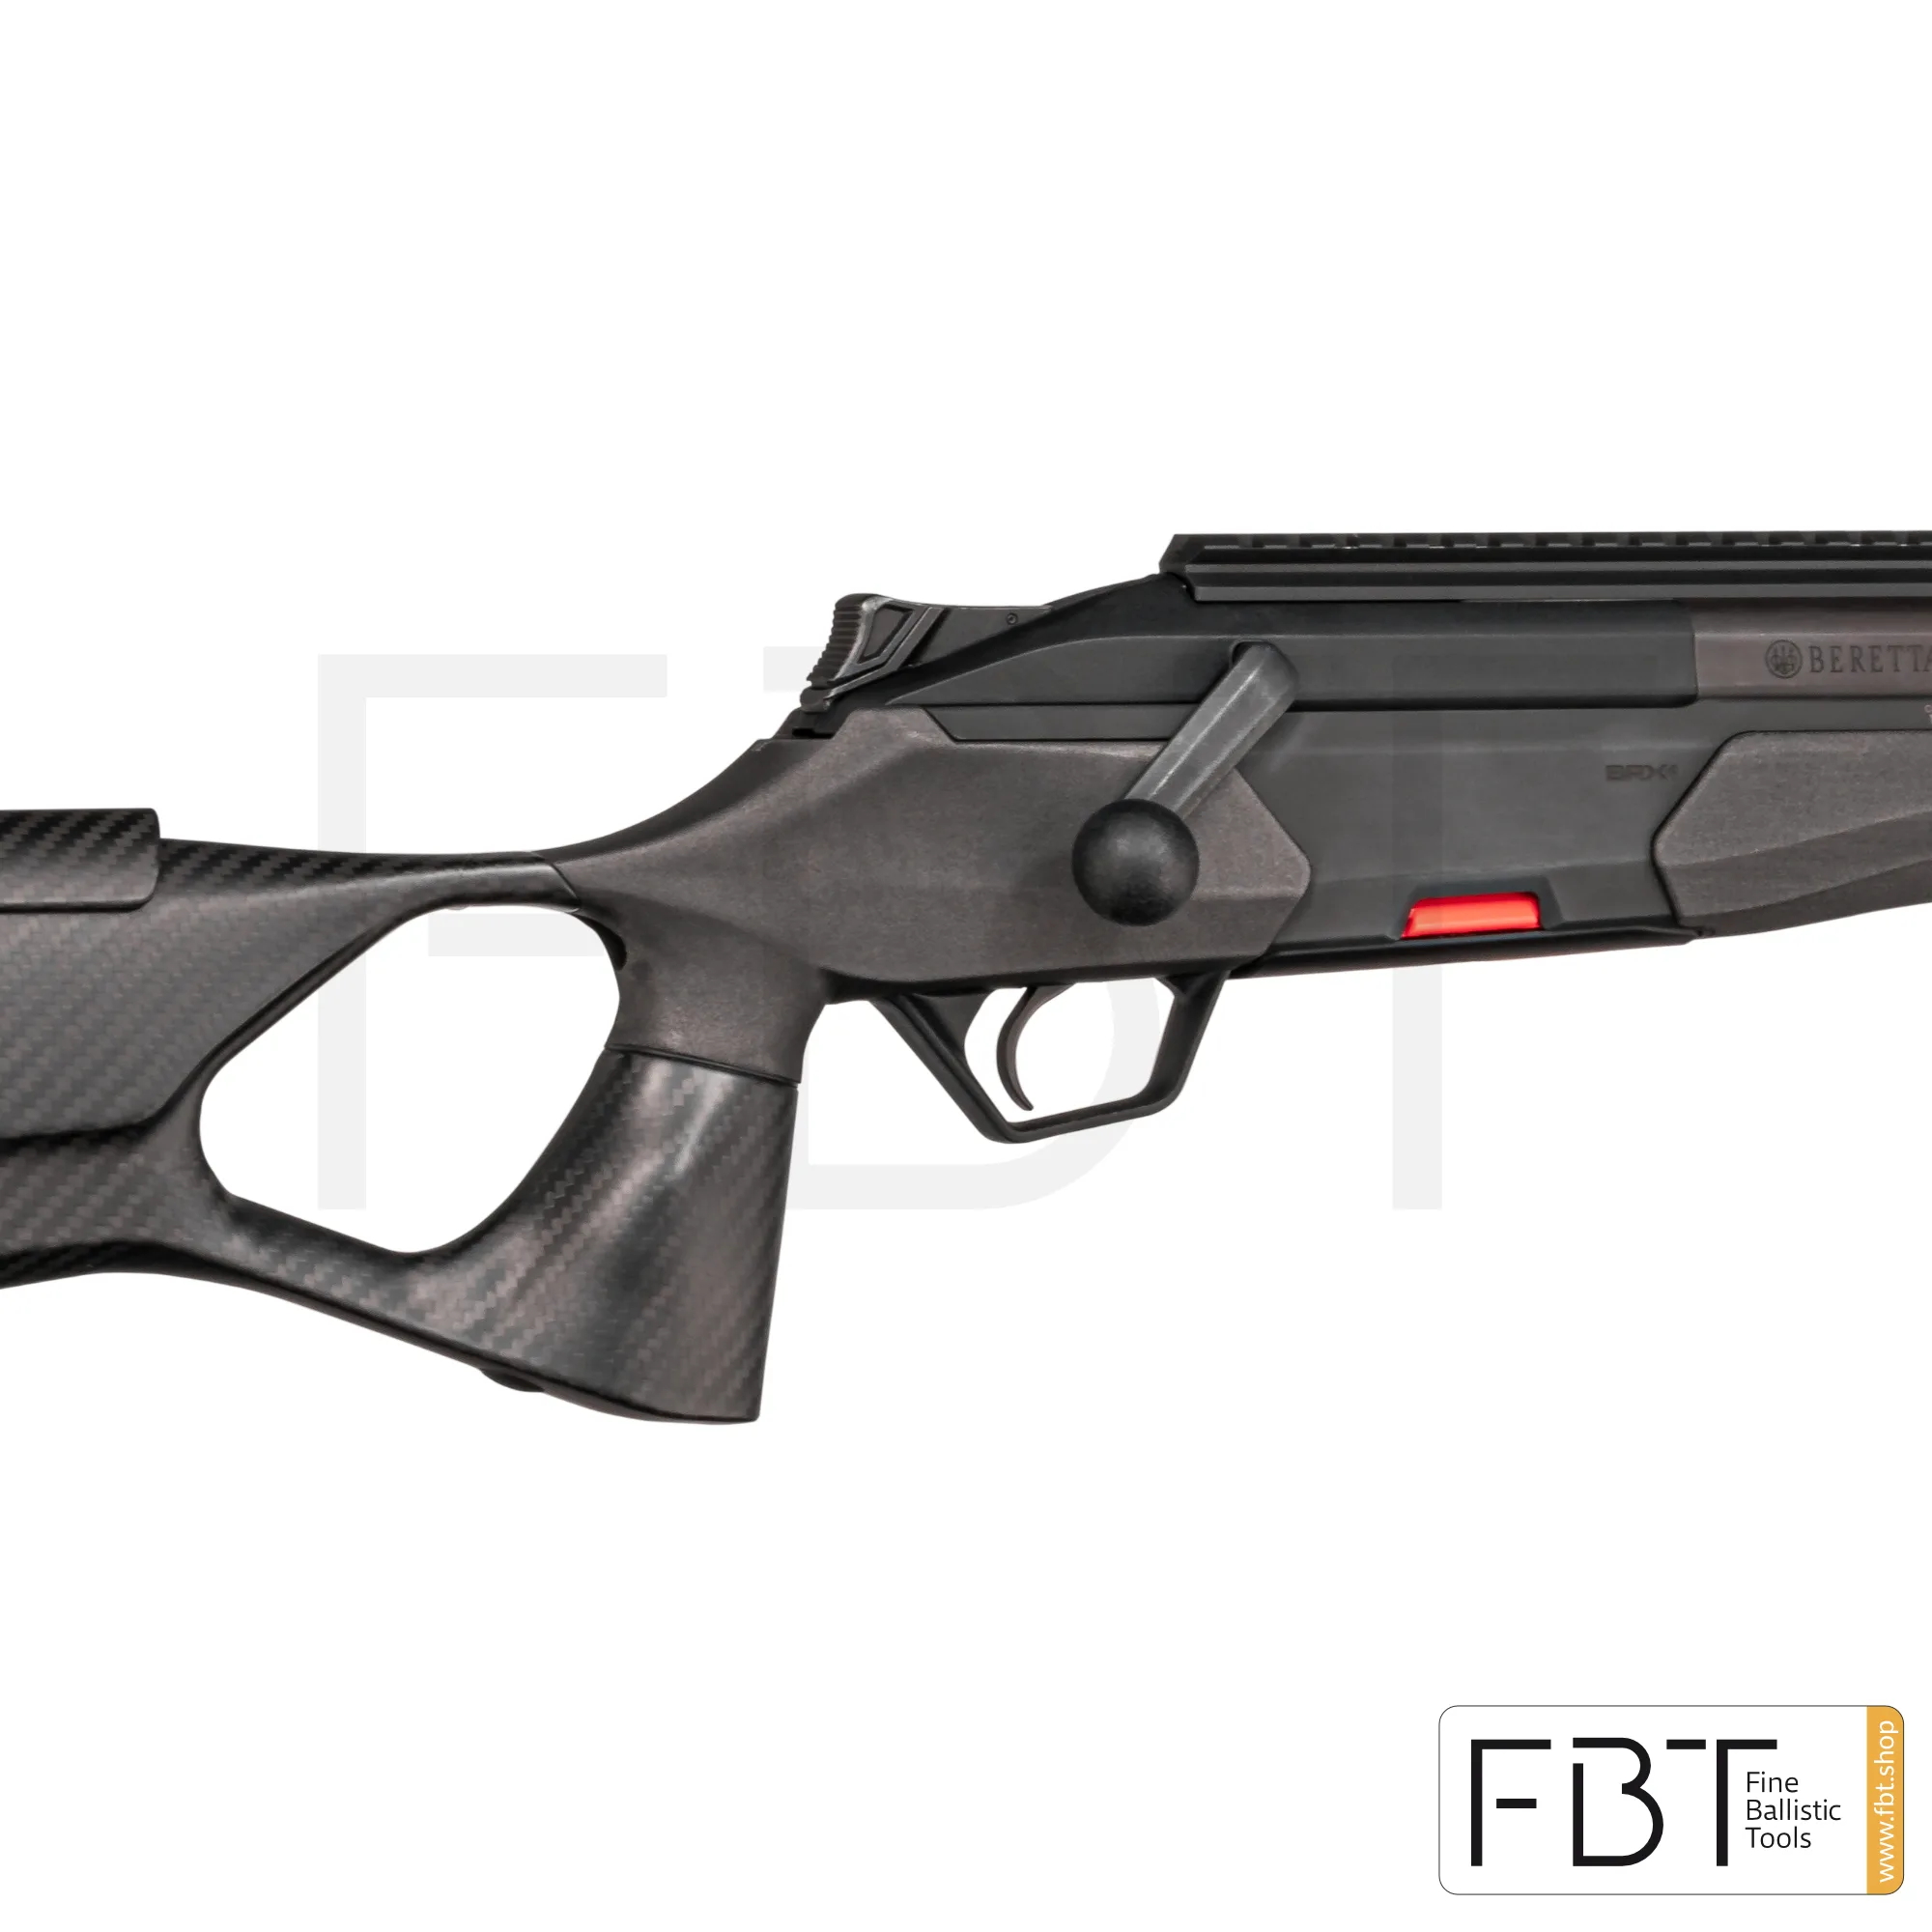 UNIC Carbonschaft für Beretta BRX1 Waffe| Fine Ballistic Tools